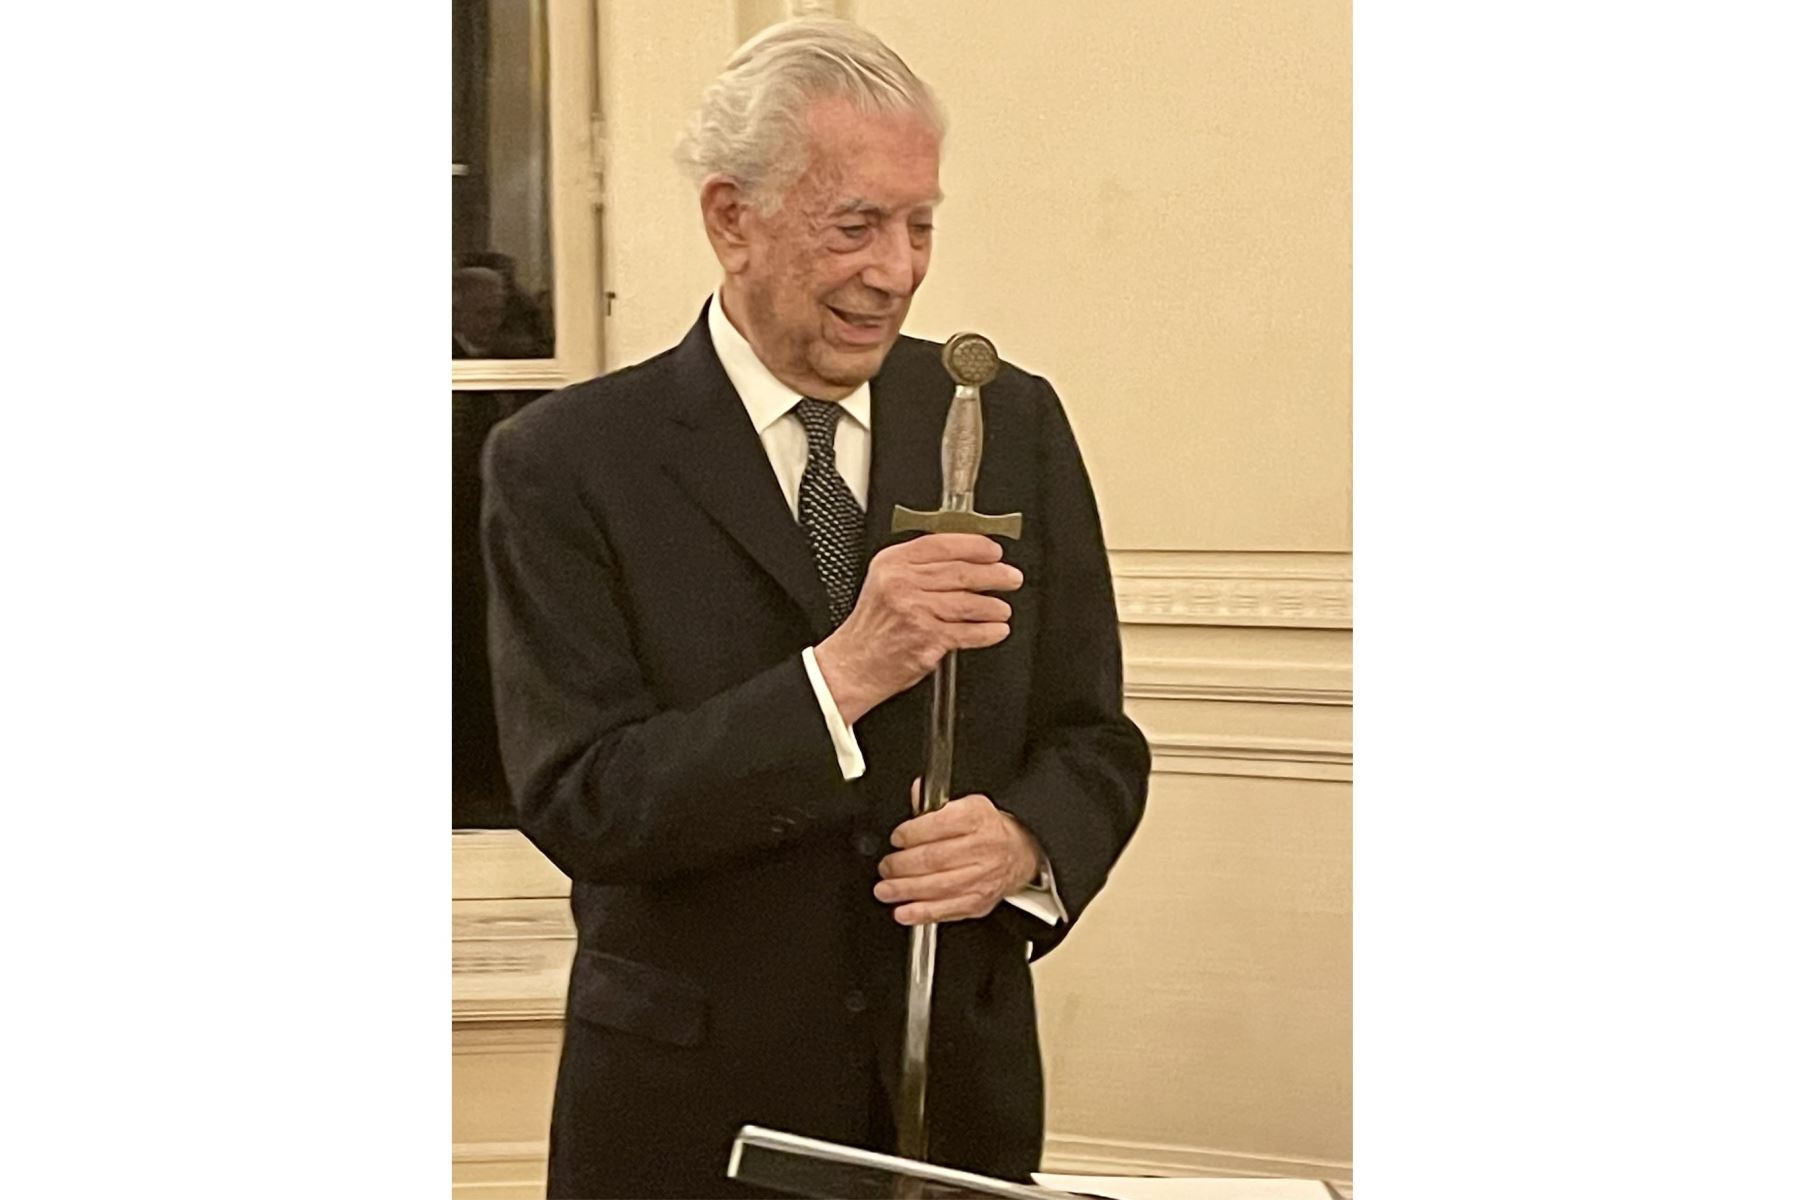 La entrega de la espada. 
Un rito desde los tiempos de Richelieu como parte de la incorporación a la Academia

Foto: Morgana Vargas Llosa